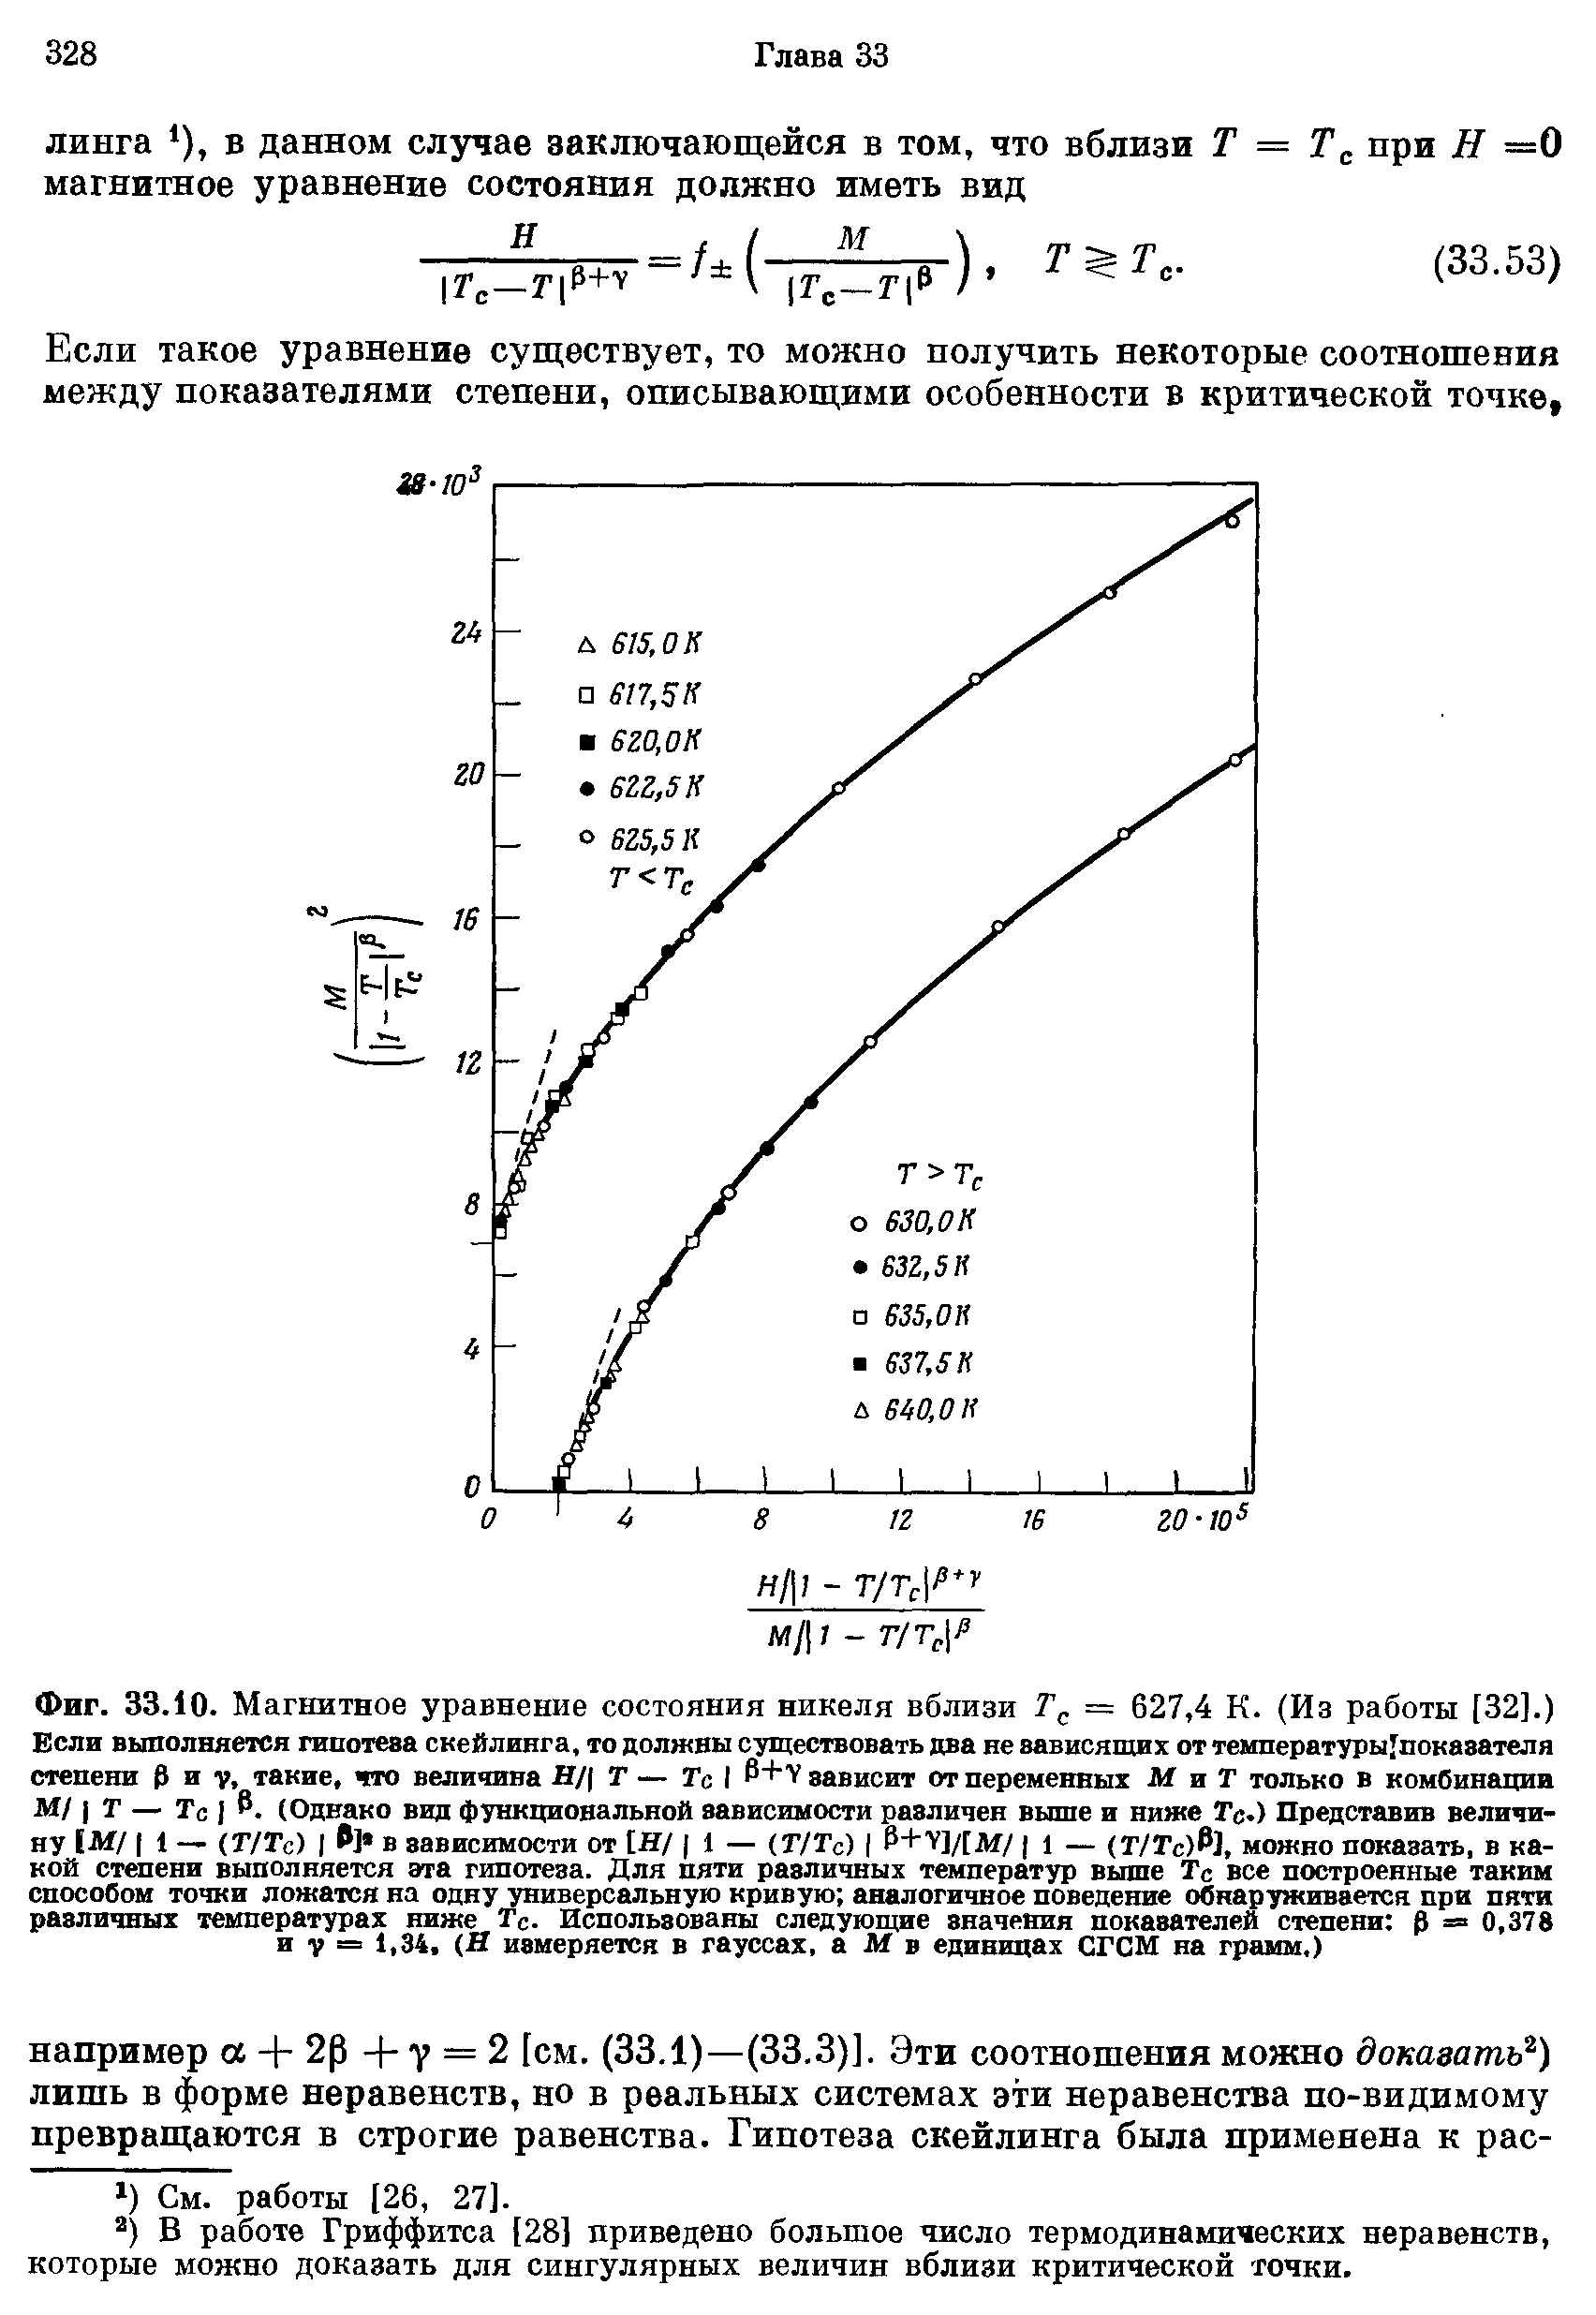 Фиг. 33.10. Магнитное уравнение состояния никеля вблизи = 627,4 К. (Из работы [32].) Если выполняется гипотева скейлинга, то должны существовать два не вависящих от температуры показателя степени Р и такие, что величива Н/( Г — Гс I Р+ зависит от переменных МиГ только в комбинации М/ I Г — Тс I Р. (Однако вид функциональной зависимости различен выше и ниже Тс.) Представив величину М/ I 1 — (Г/Тс) I ] в зависимости от [Н/ 1 — (Г/Гс) Р+ У]/[ДГ/ 1 — (Г/Тс)Р), можно показать, в какой степени выполняется эта гипотеза. Для пяти различных температур выше Тс все построенные таким способом точки ложатся на одну универсальную кривую аналогичное поведение обнаруживается при пяти различных <a href="/info/586215">температурах ниже</a> Гс. Использованы следующие значения показателей степени р = 0,378 и V = 1,34, (Я измеряется в гауссах, а М в единицах СГСМ на грамм.)
